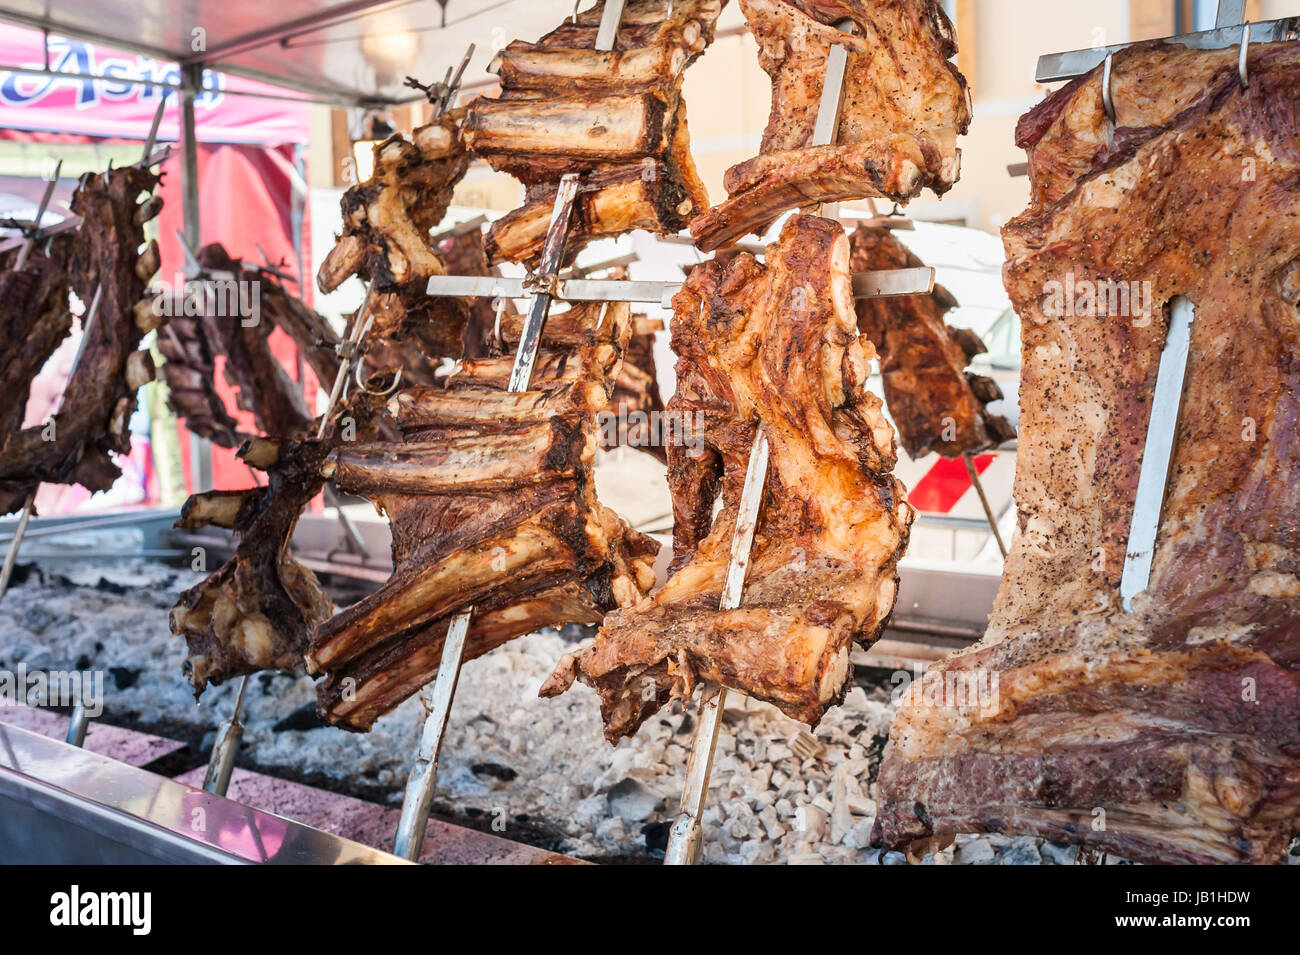 La carne asada de carne de vacuno cocinada en un parrillas verticales colocados alrededor del fuego. Asado, parrillada tradicional plato en Argentina Foto de stock